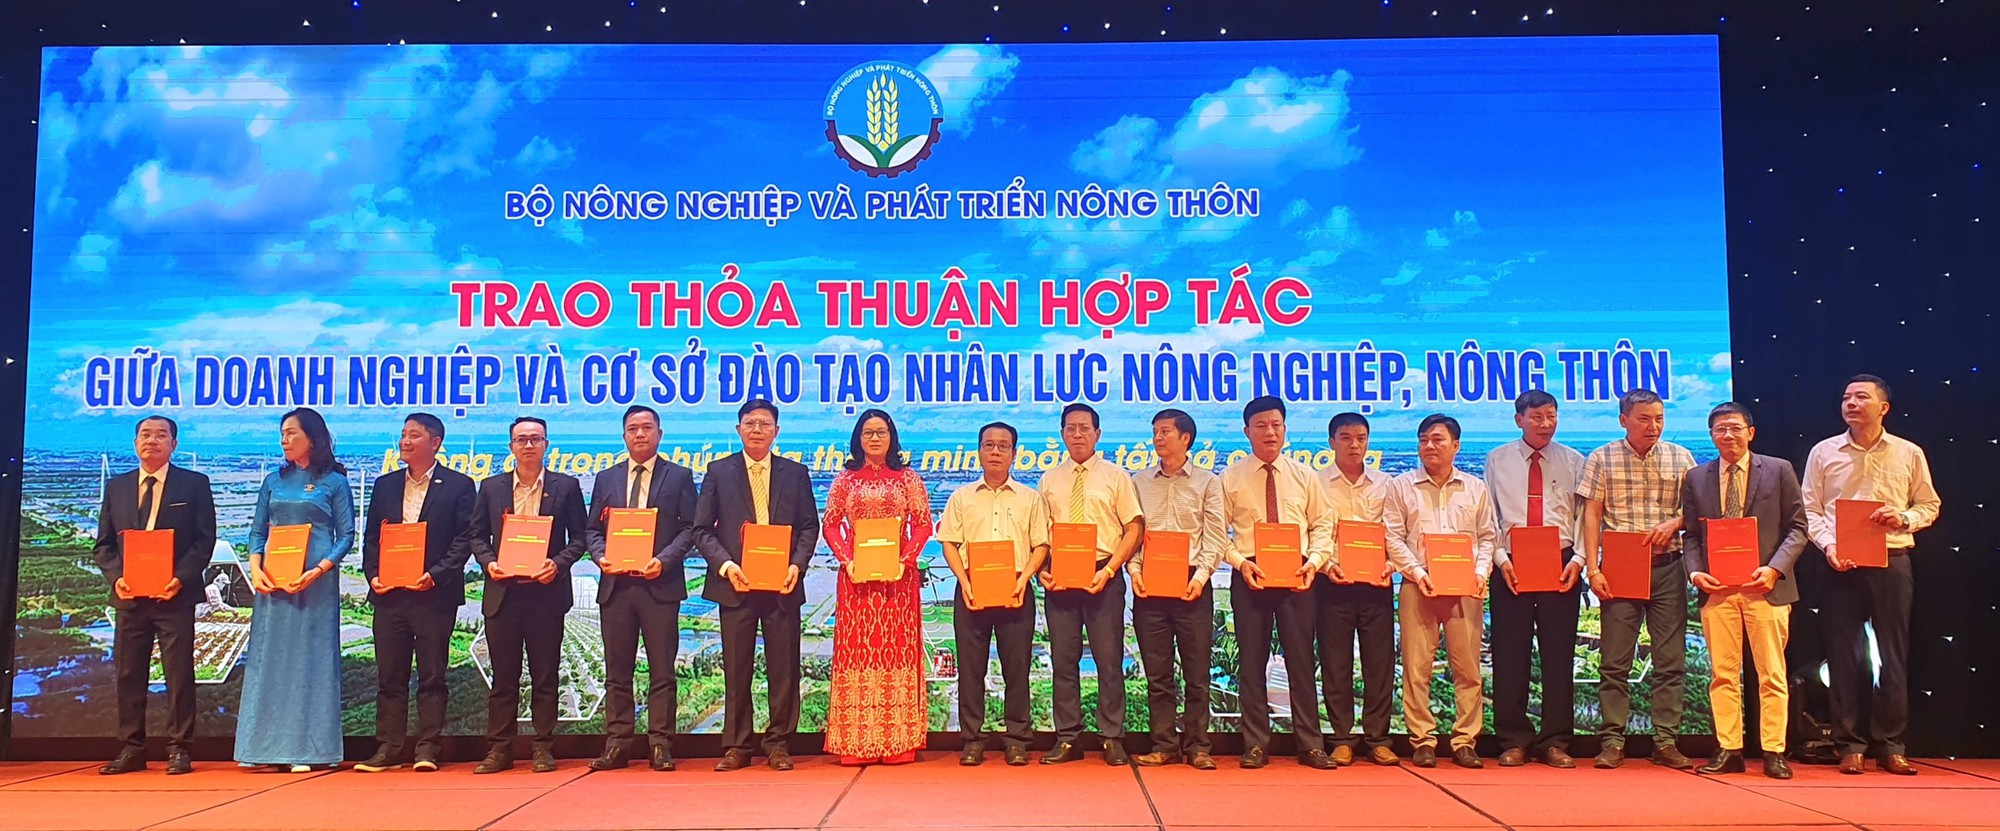 Học viện Nông nghiệp Việt Nam tuyển sinh 5.991 chỉ tiêu cho 18 nhóm ngành với 43 ngành đào tạo, rất nhiều ngành 'hot'- Ảnh 1.